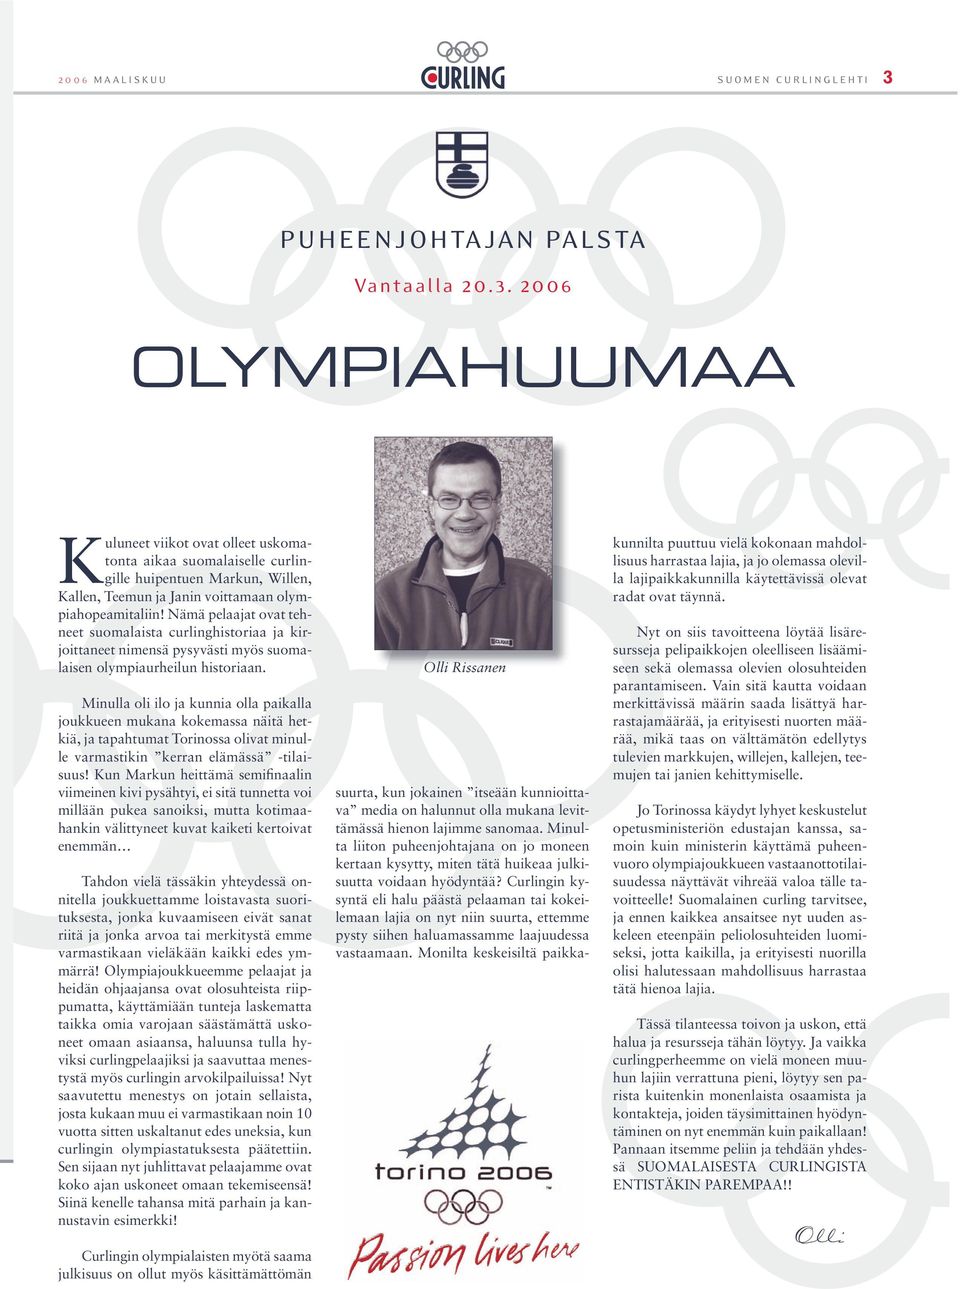 2006 OLYMPIAHUUMAA Kuluneet viikot ovat olleet uskomatonta aikaa suomalaiselle curlingille huipentuen Markun, Willen, Kallen, Teemun ja Janin voittamaan olympiahopeamitaliin!